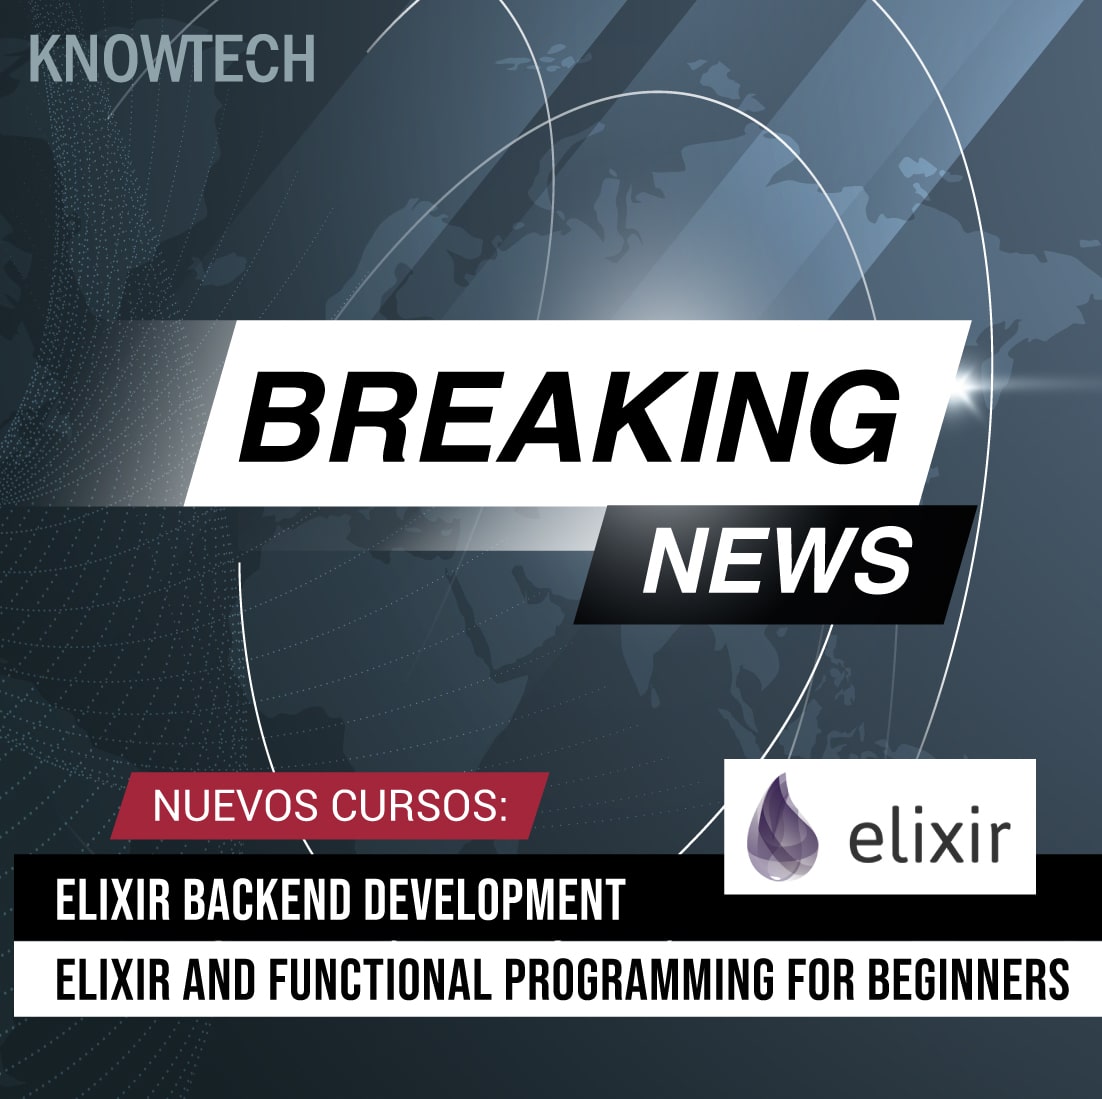 Conoce todos los secretos de la programación funcional con Elixir, las bases del lenguaje y su integración en el Backend con Phoenix.